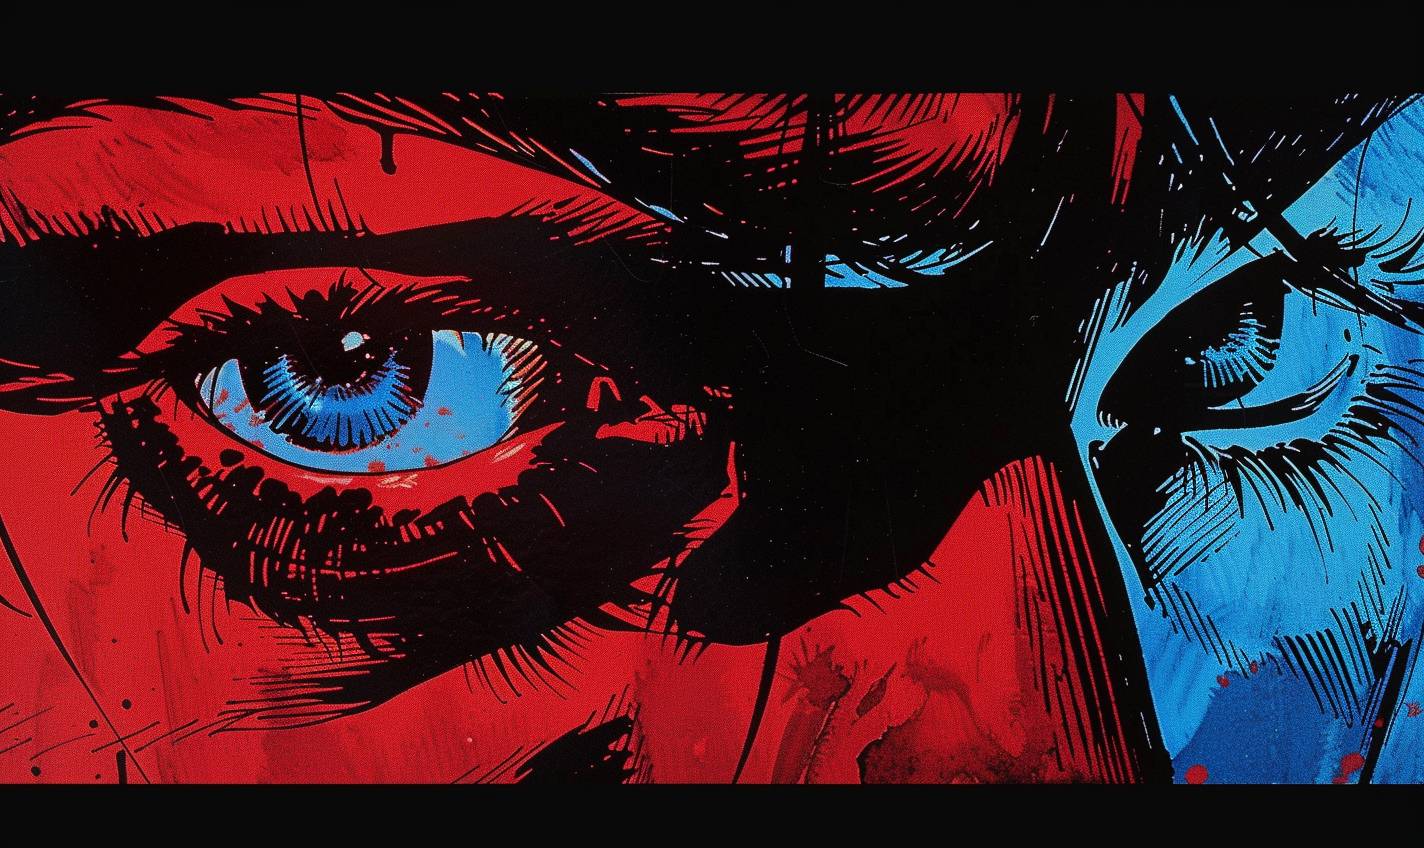 Frank Millerによるダークでドラマチックなクローズアップ漫画コミックストリップイラスト。 赤と青の色調